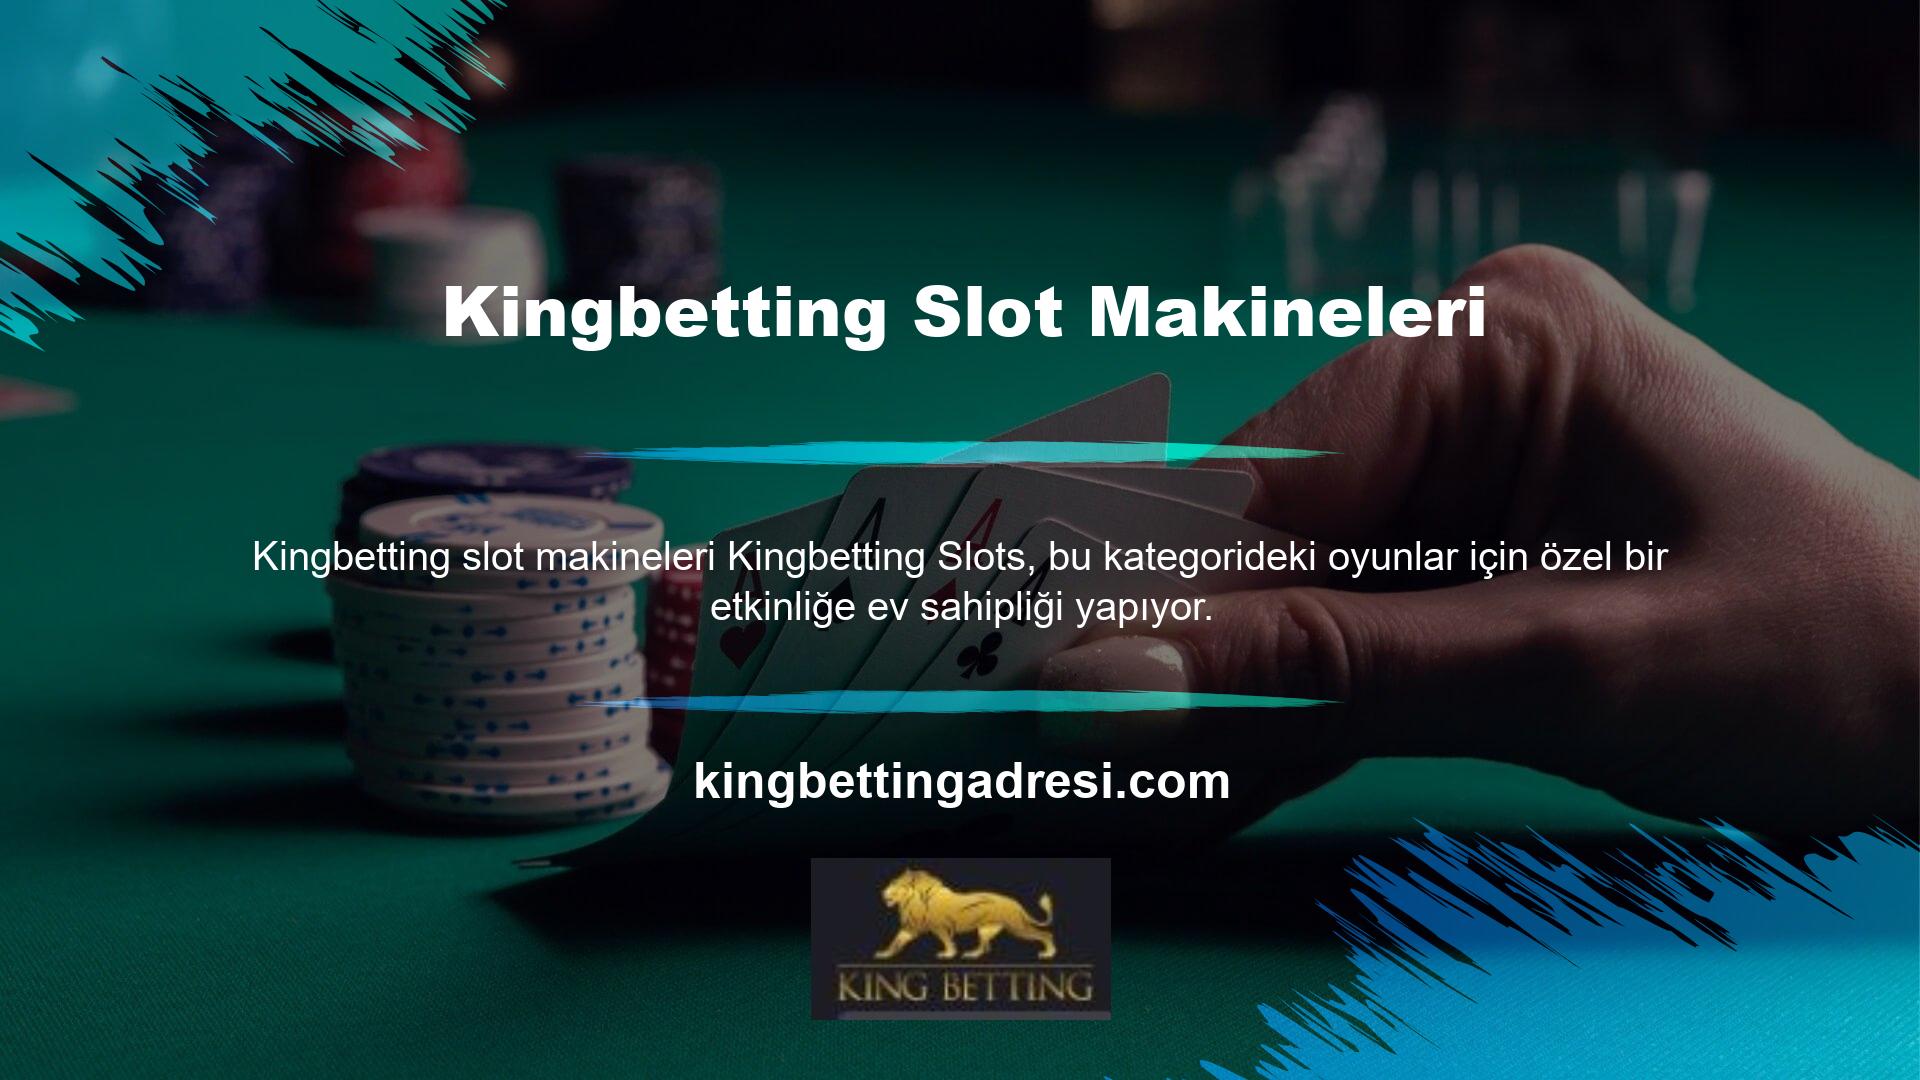 Ödül kazanma konusunda Kingbetting çok cömerttir ve özel slot etkinlikleri düzenler